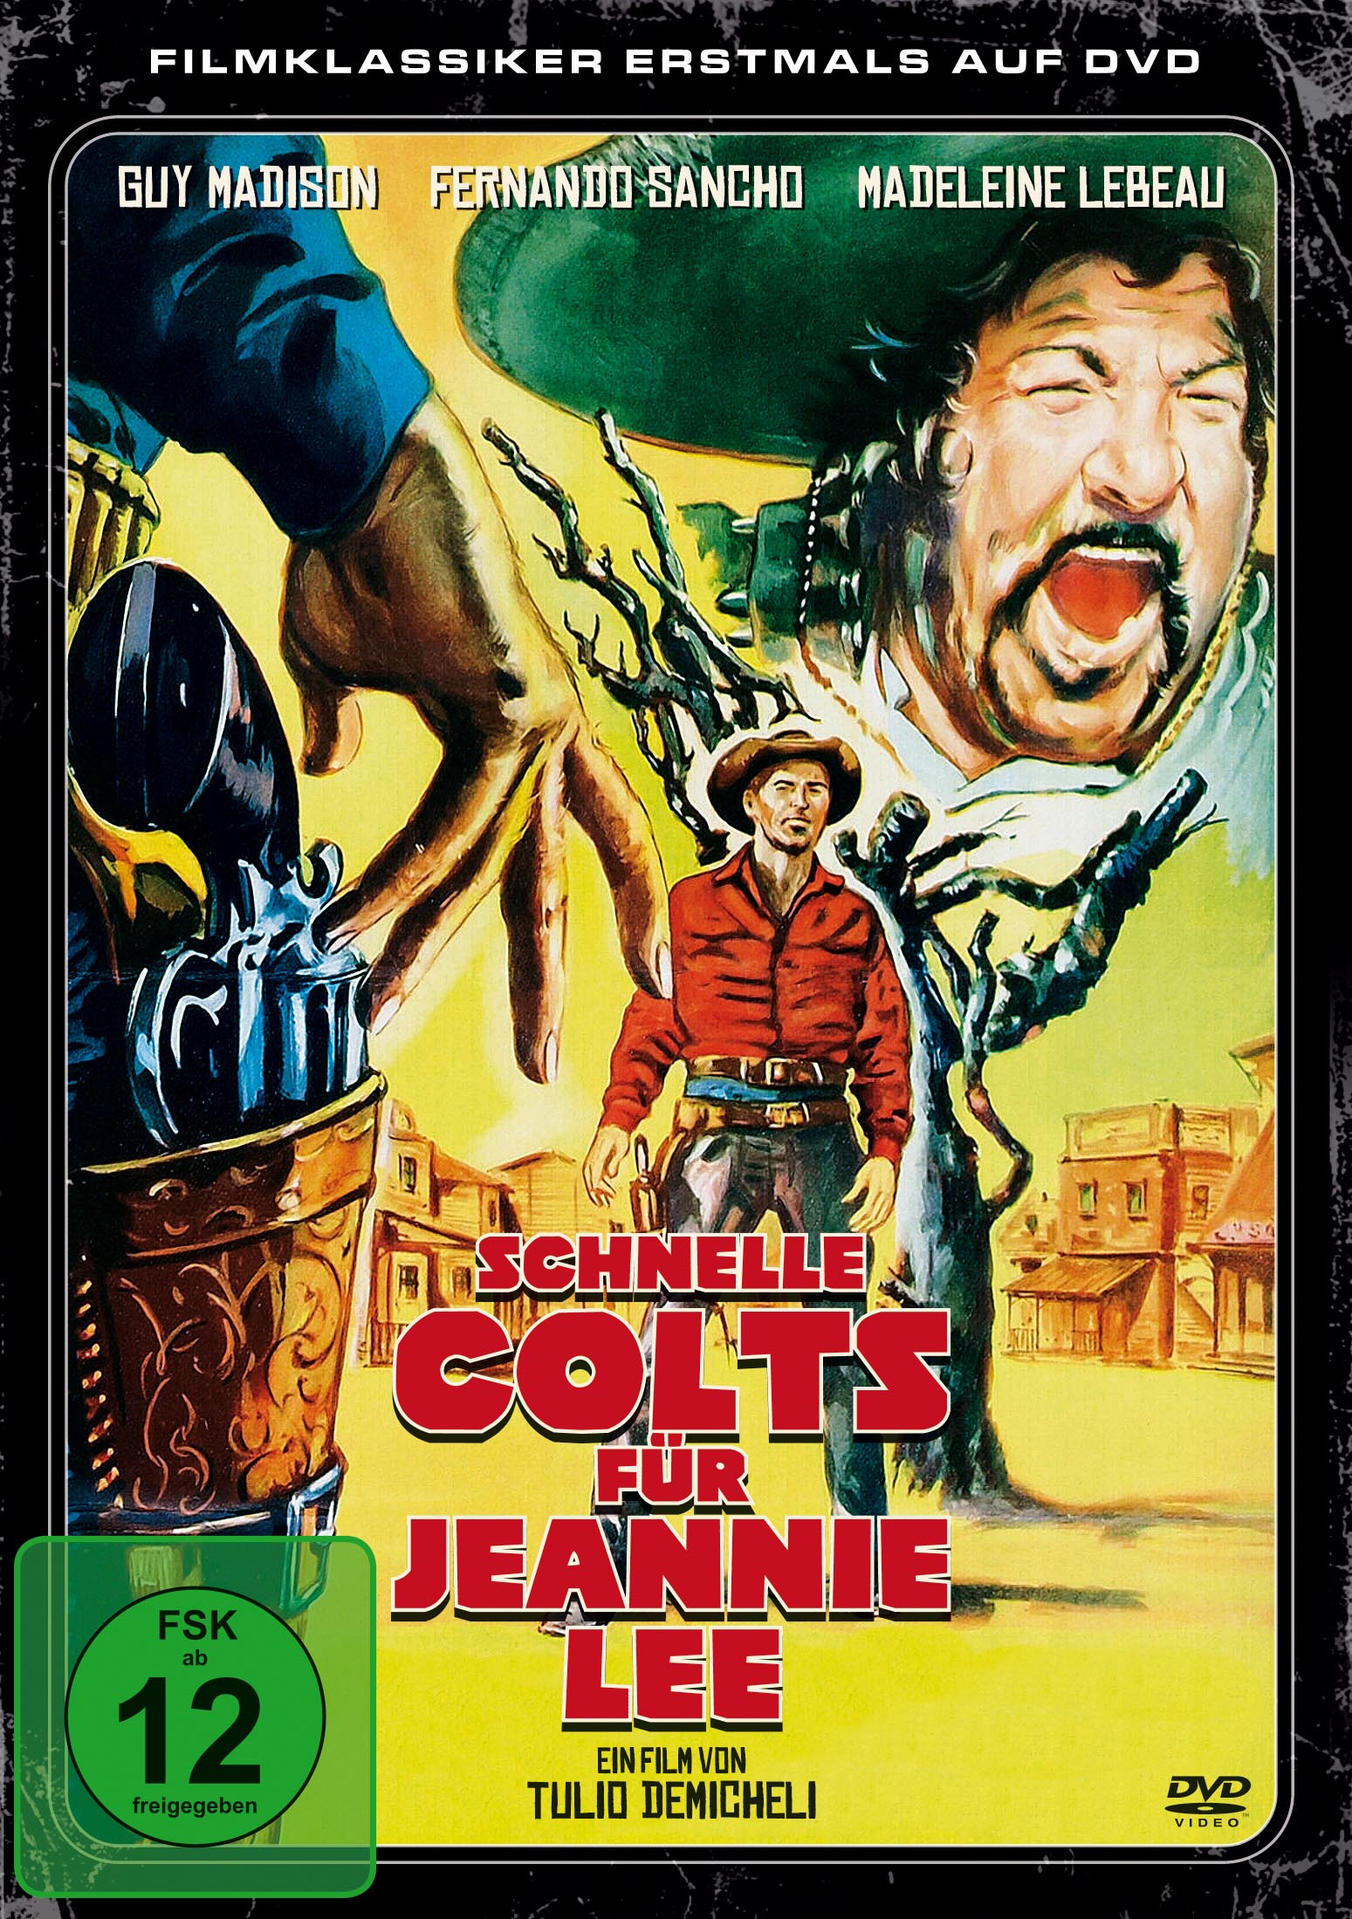 Schnelle Colts Jeannie für DVD Lee